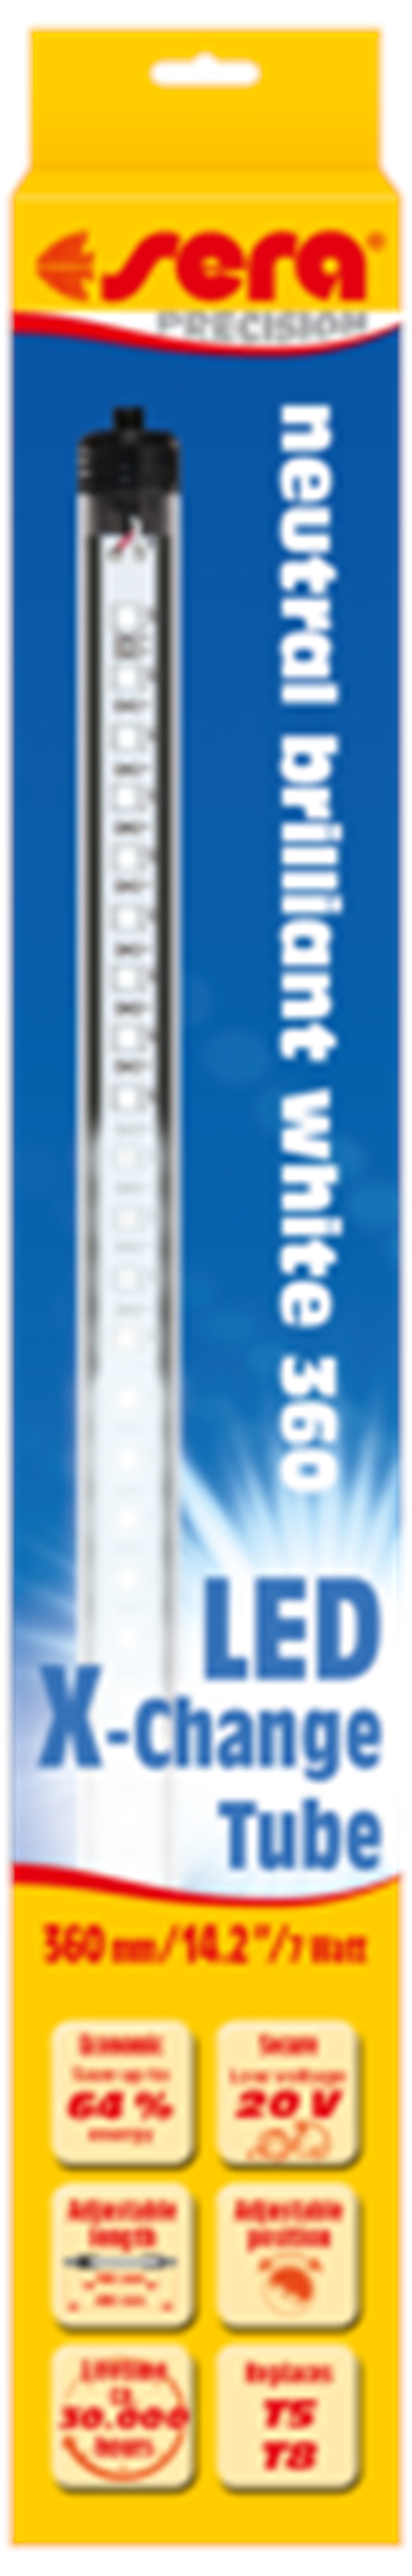 sera LED neutral brilliant white 660 mm / 10,2 W